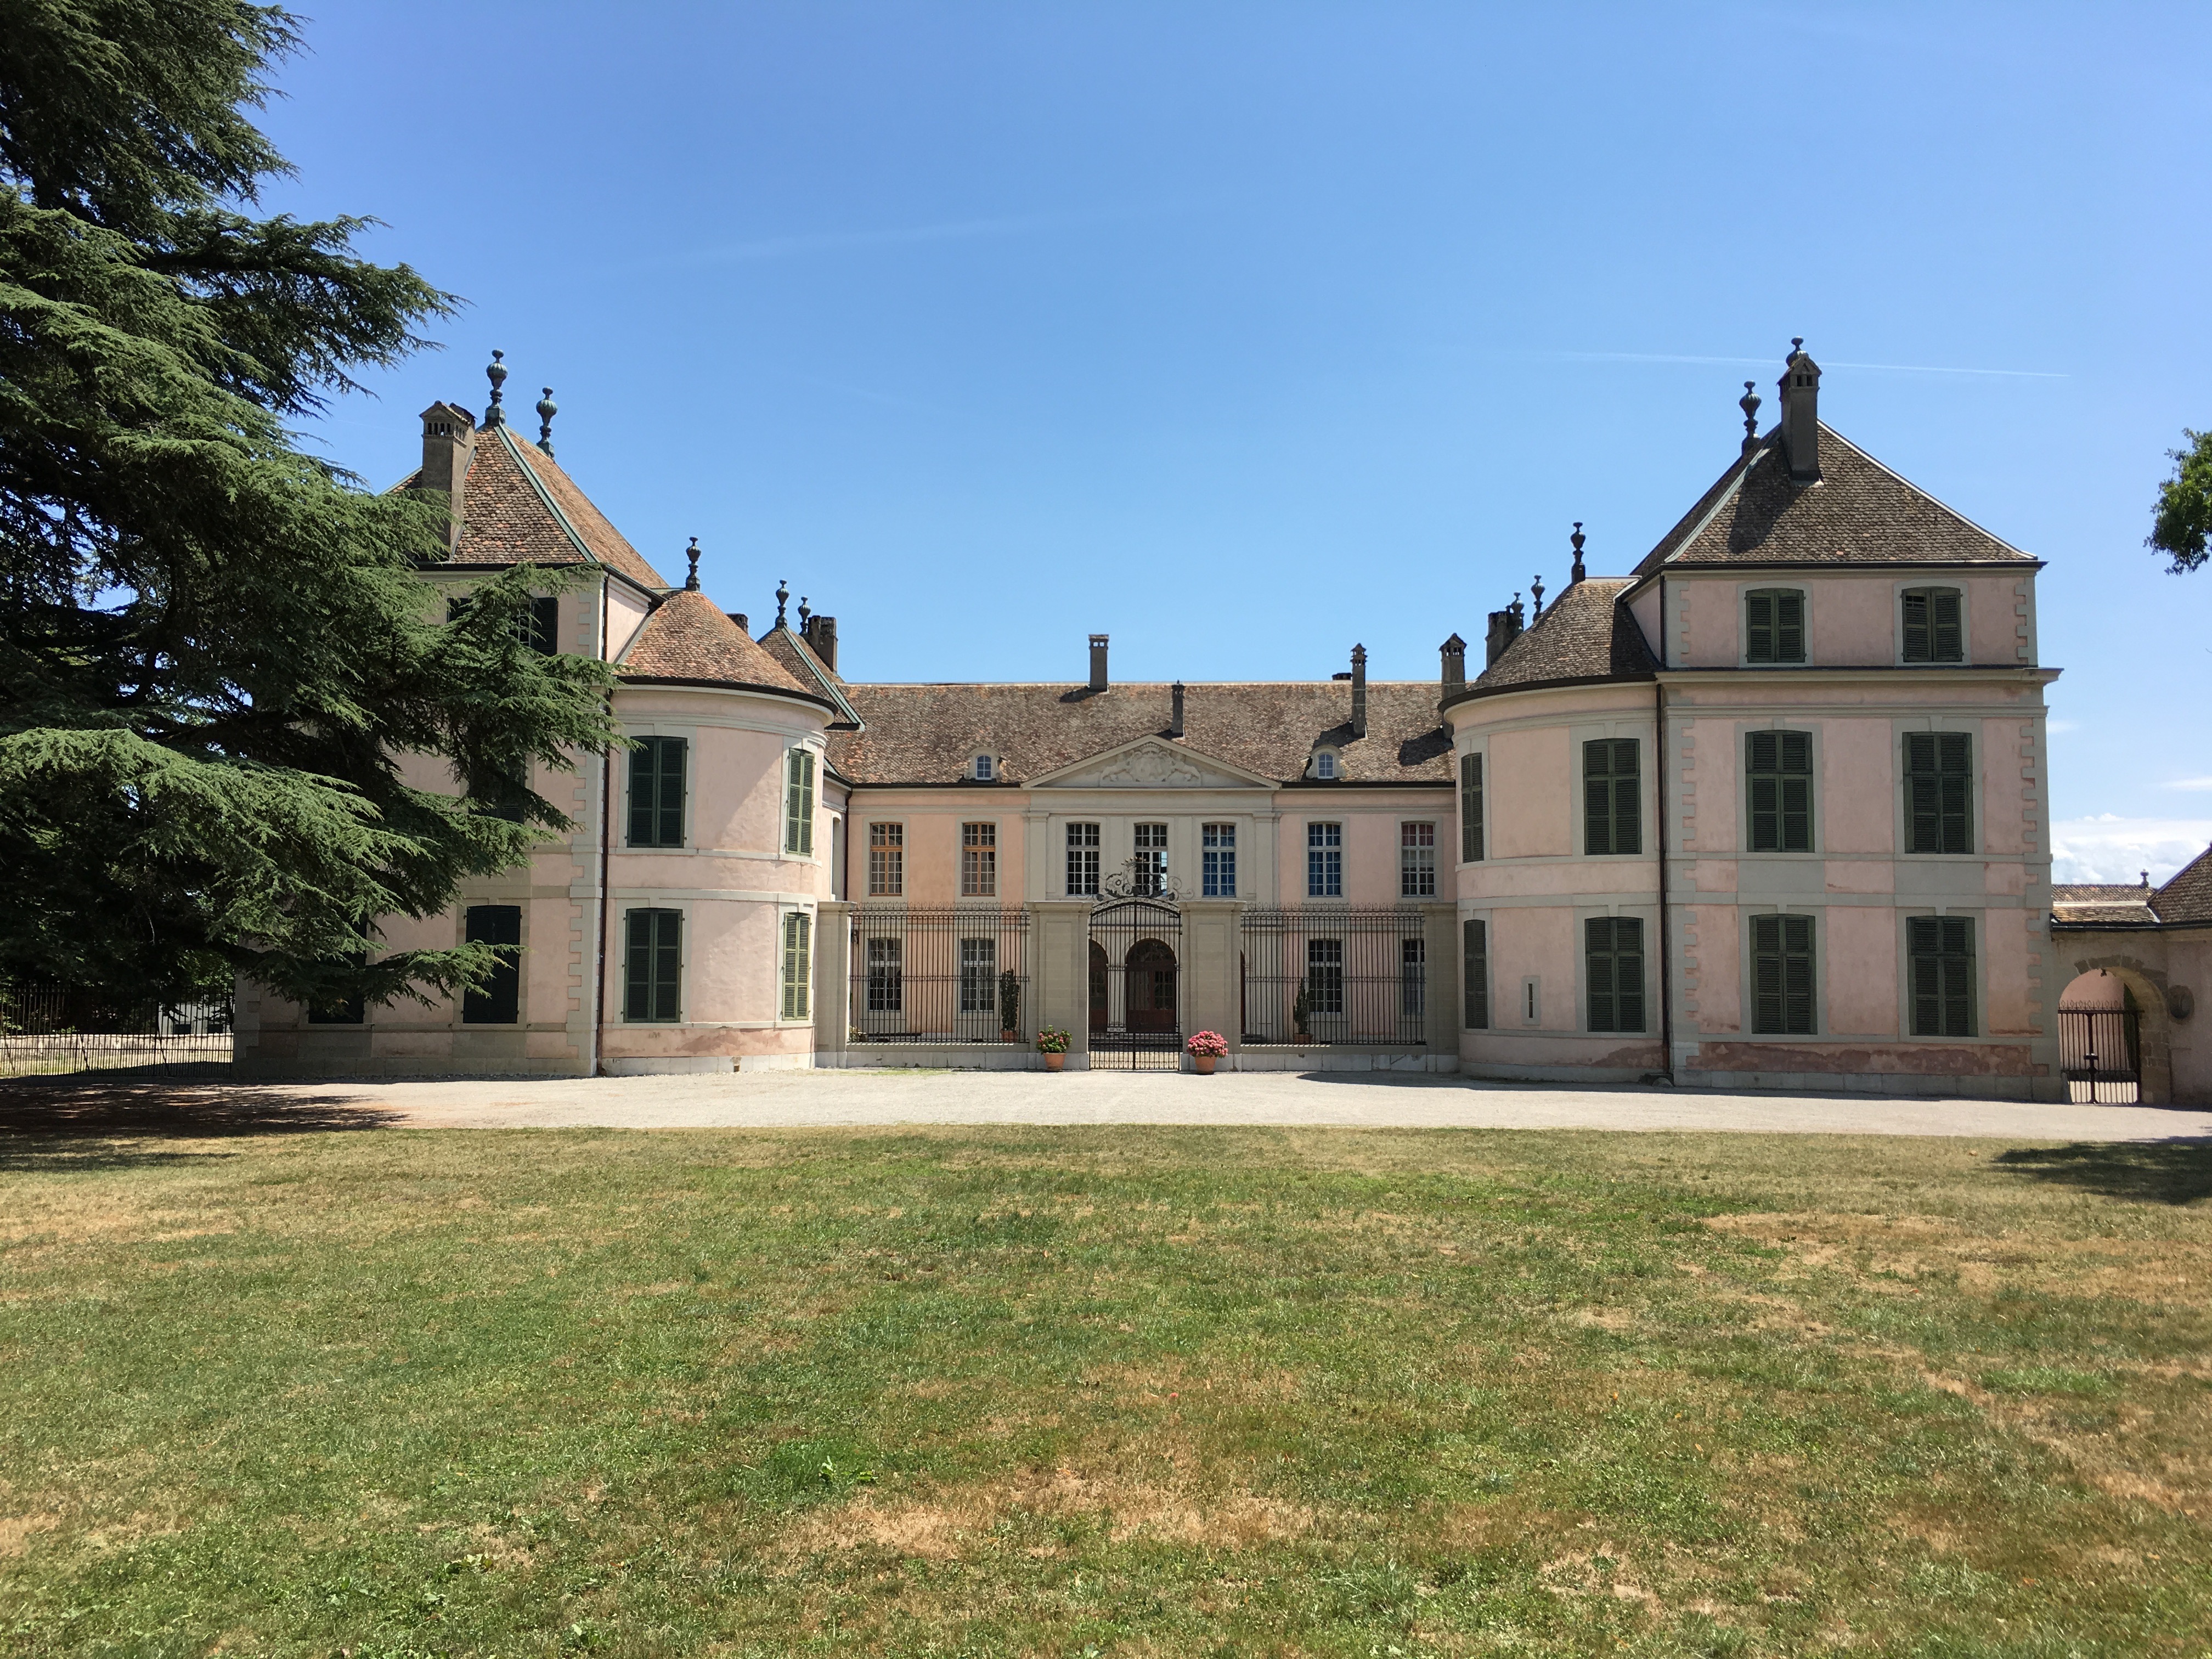 Chateau de Coppet - Source Fondation O. D'Haussonville 